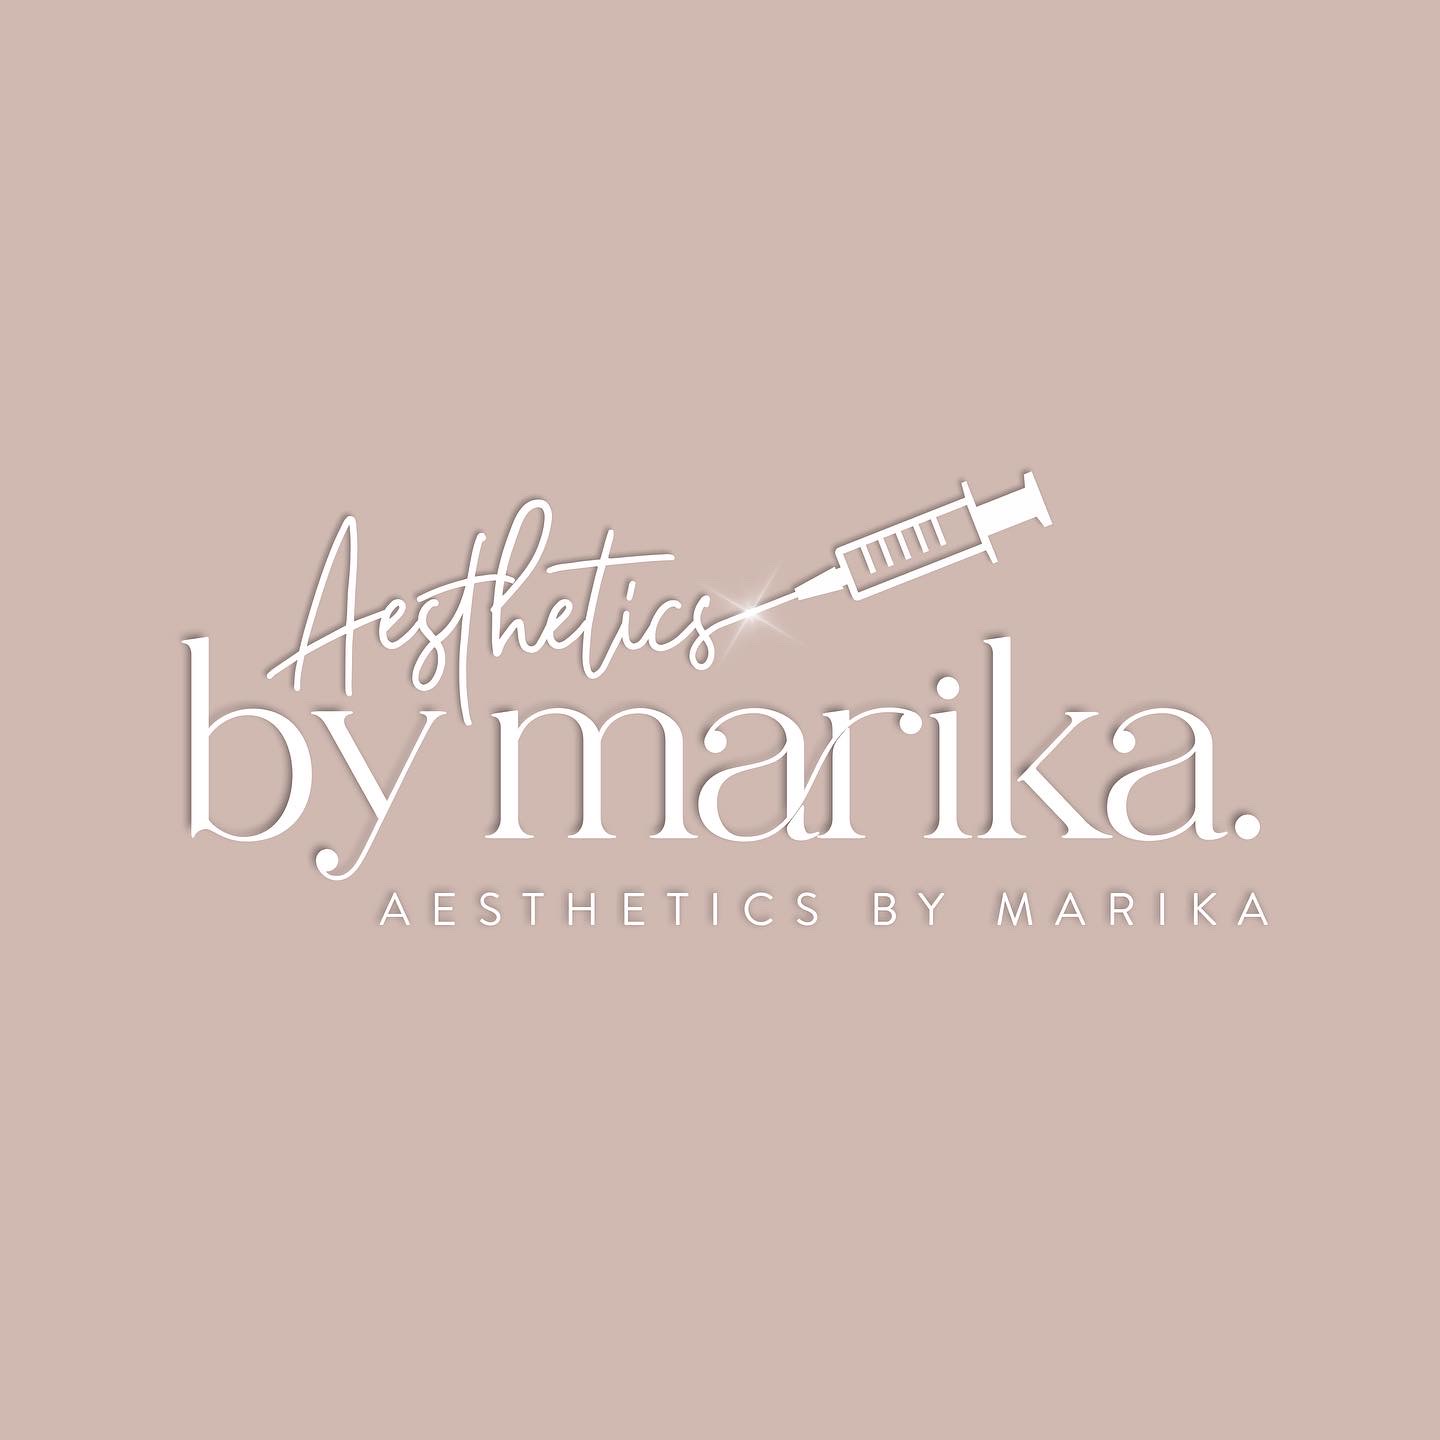 Aesthetics By Marika